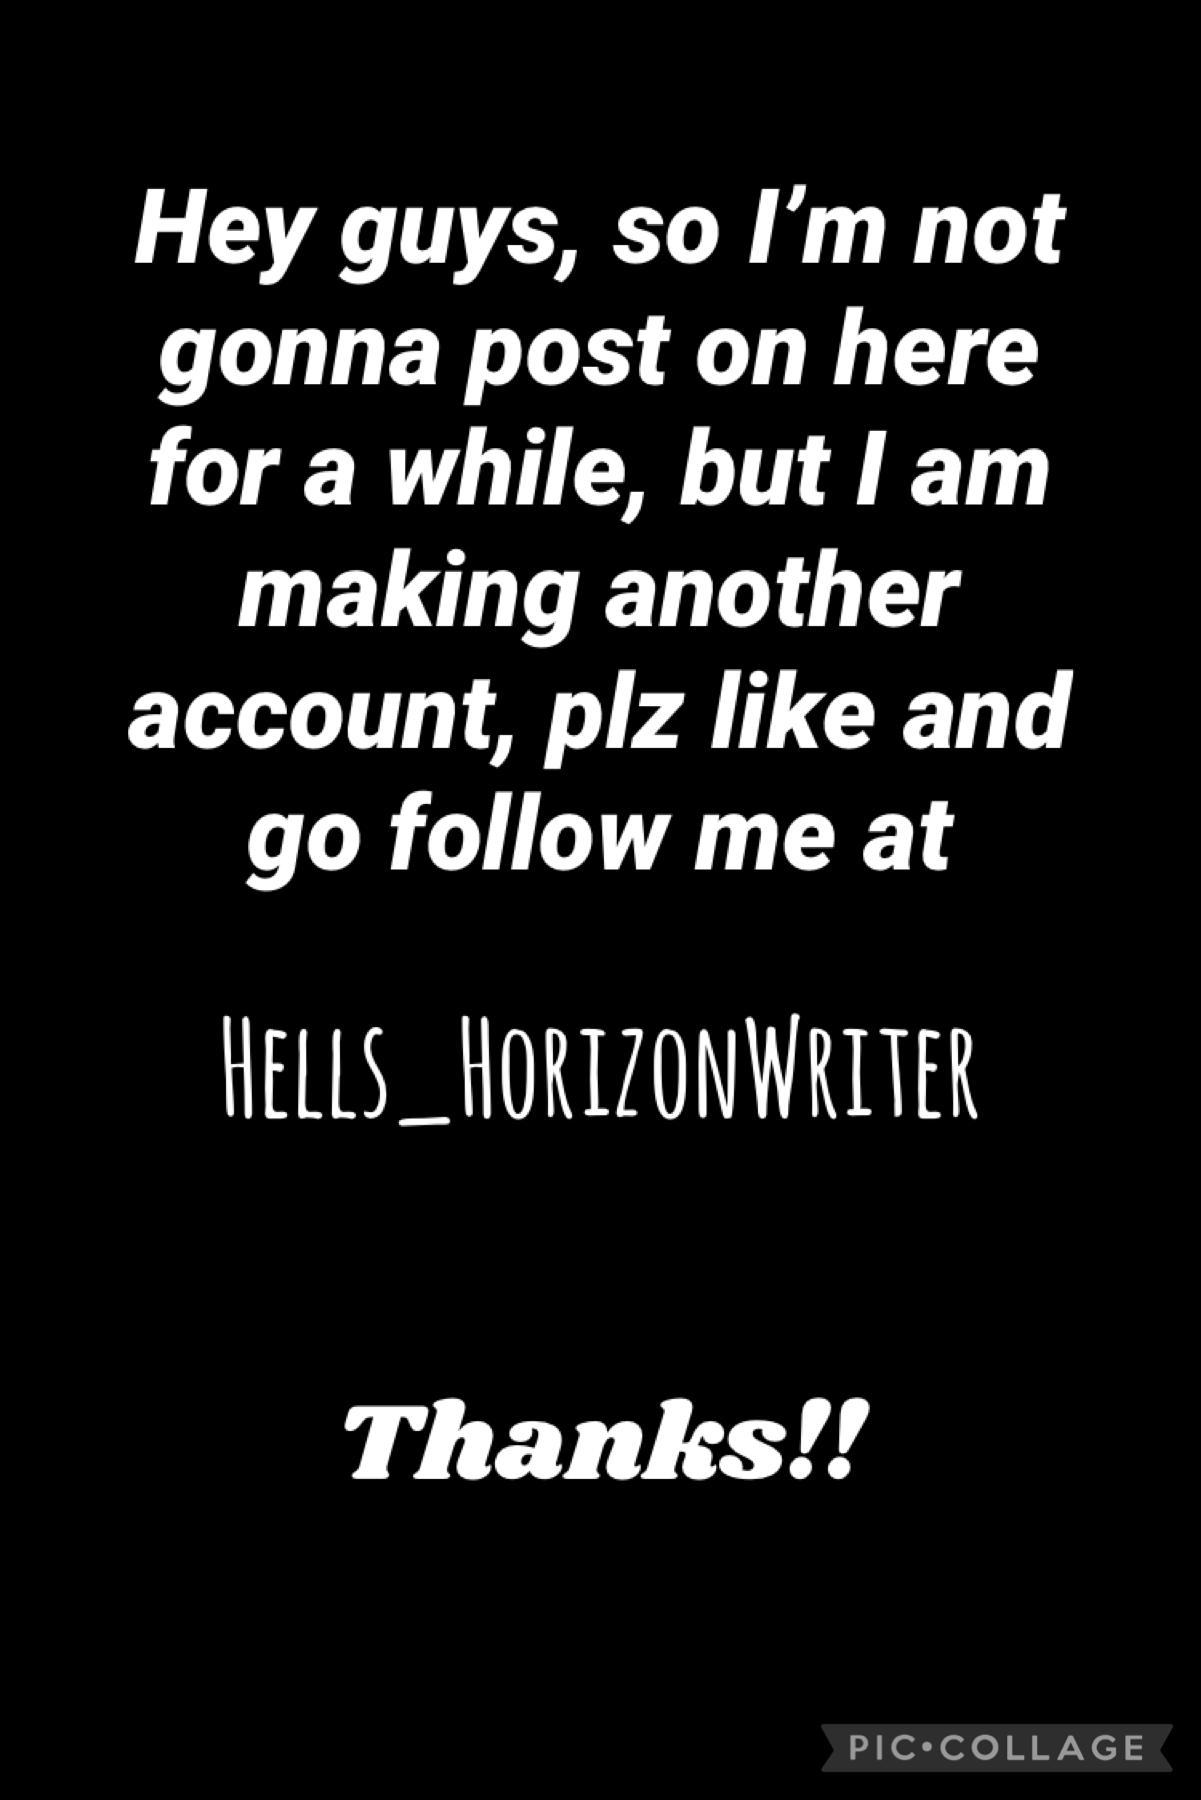 Hells_HorizonWriter